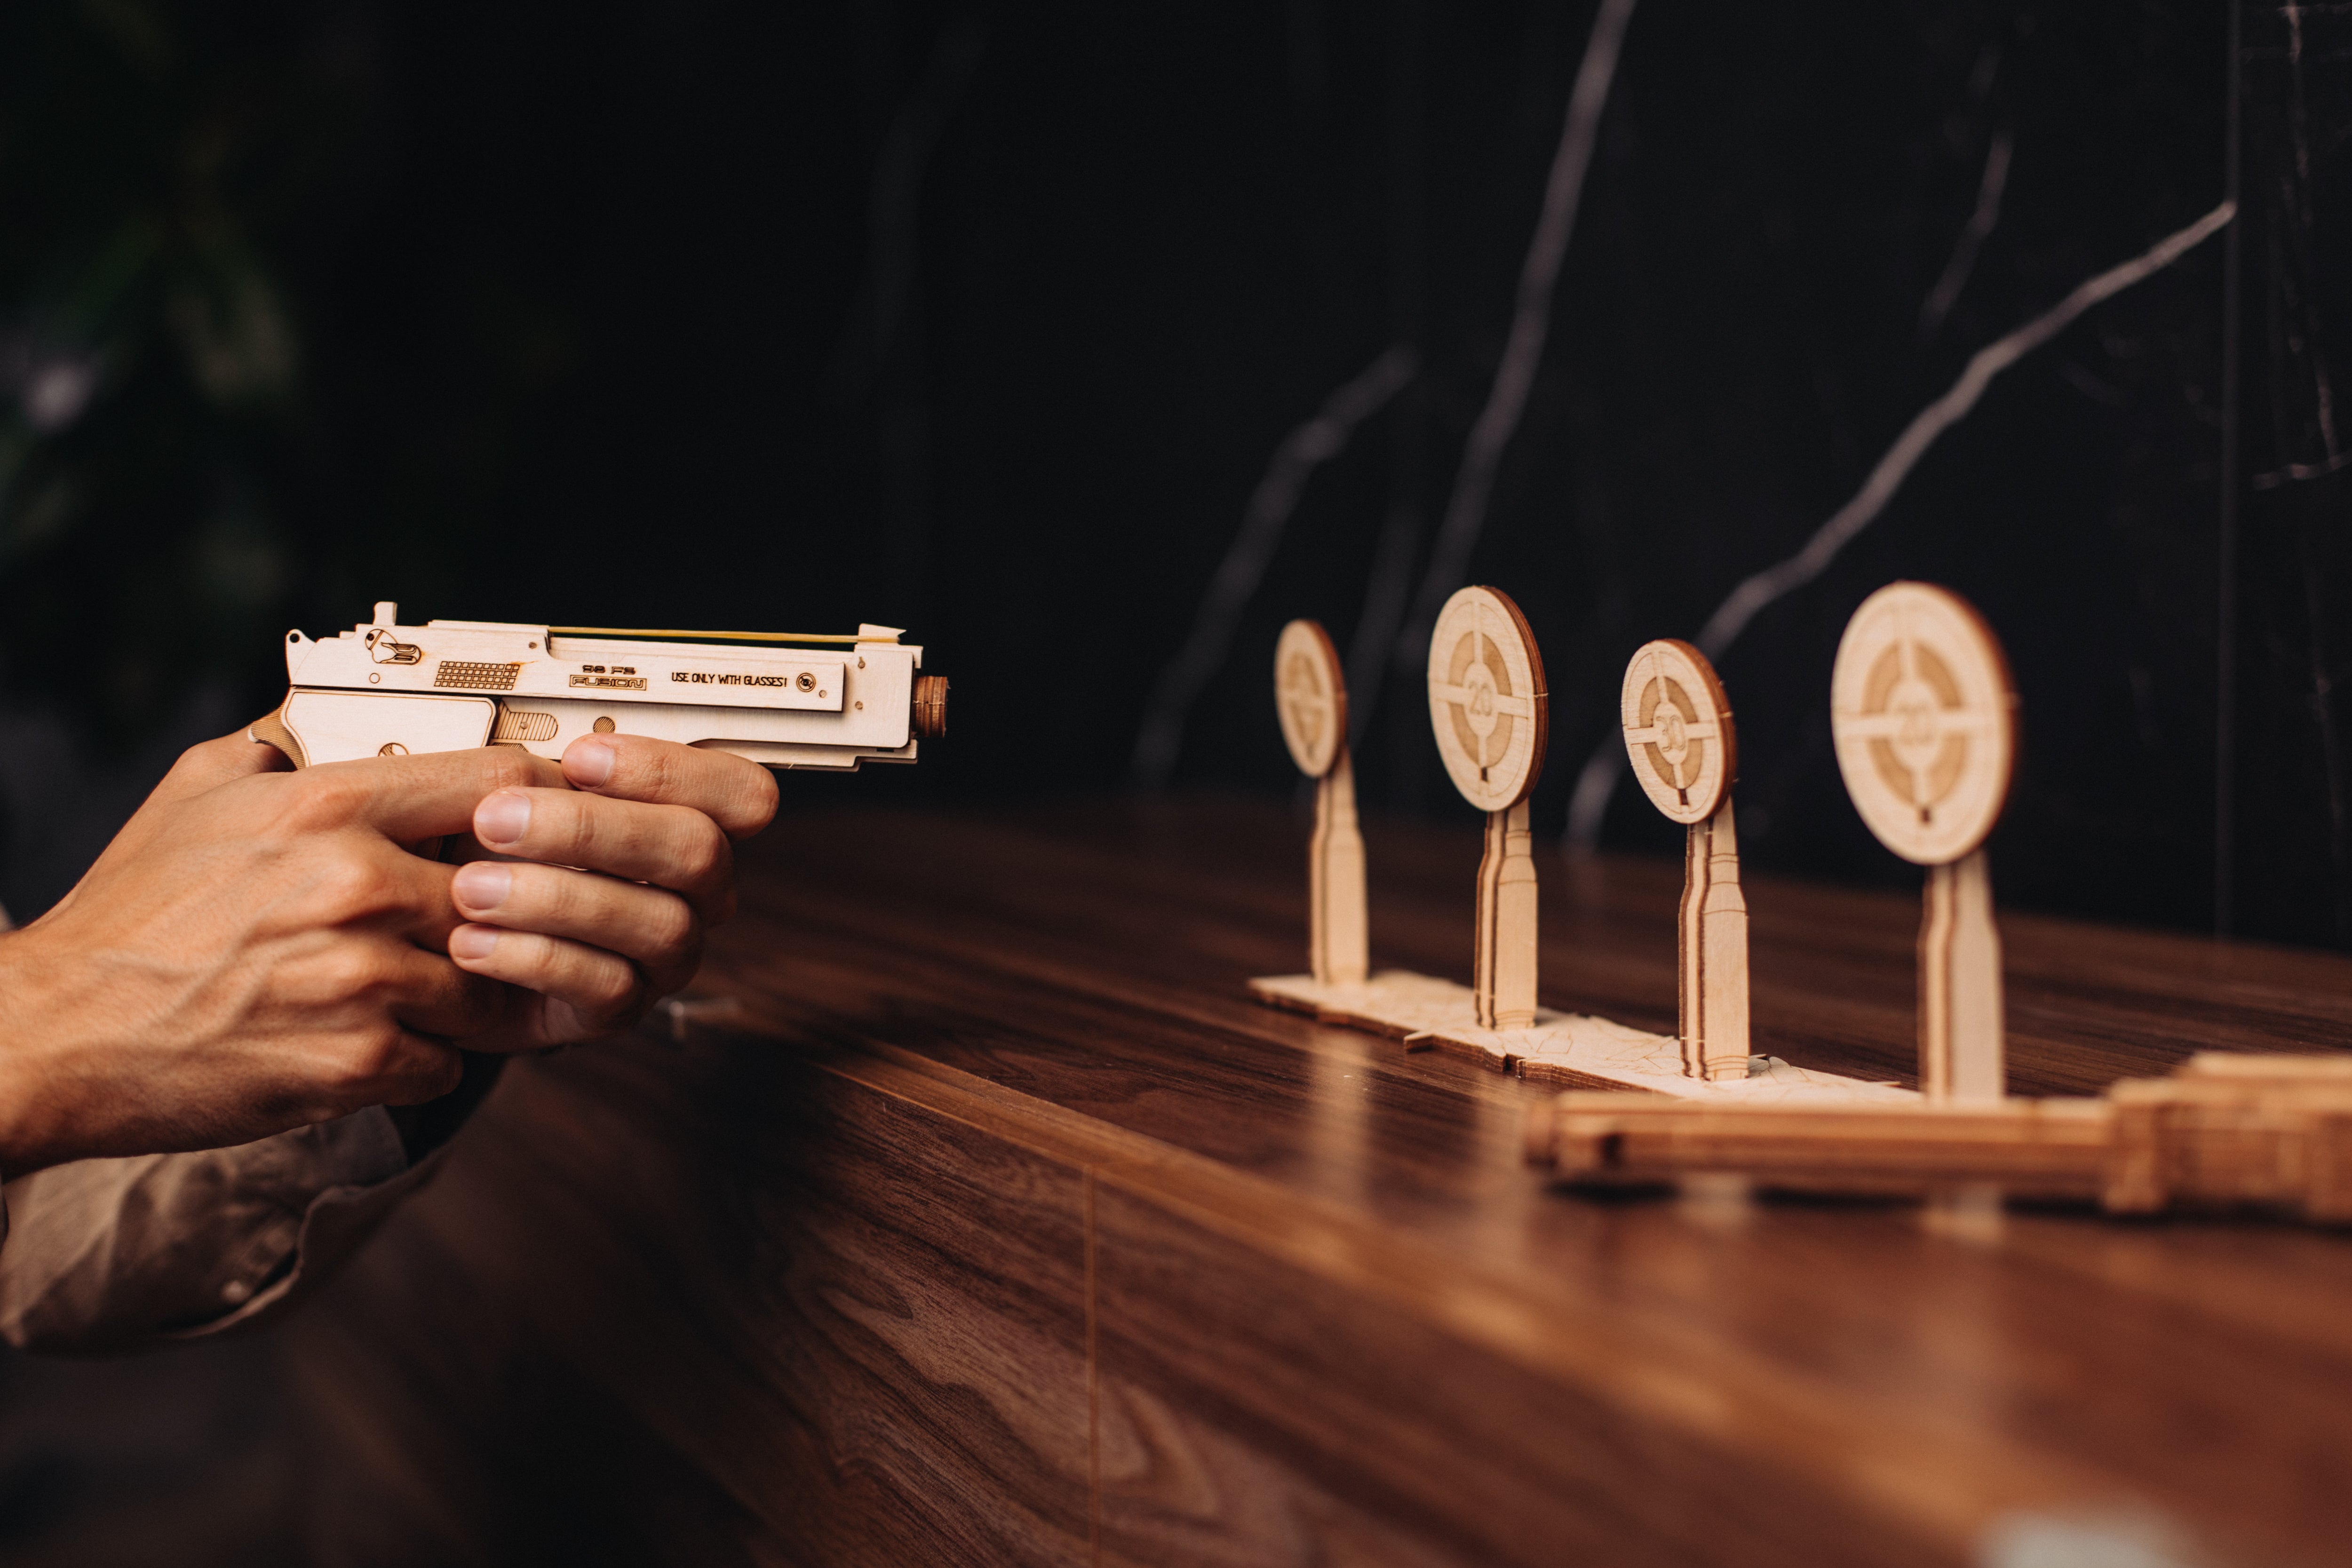 Wood Trick M1 Gun & Shooting Range 3D Set